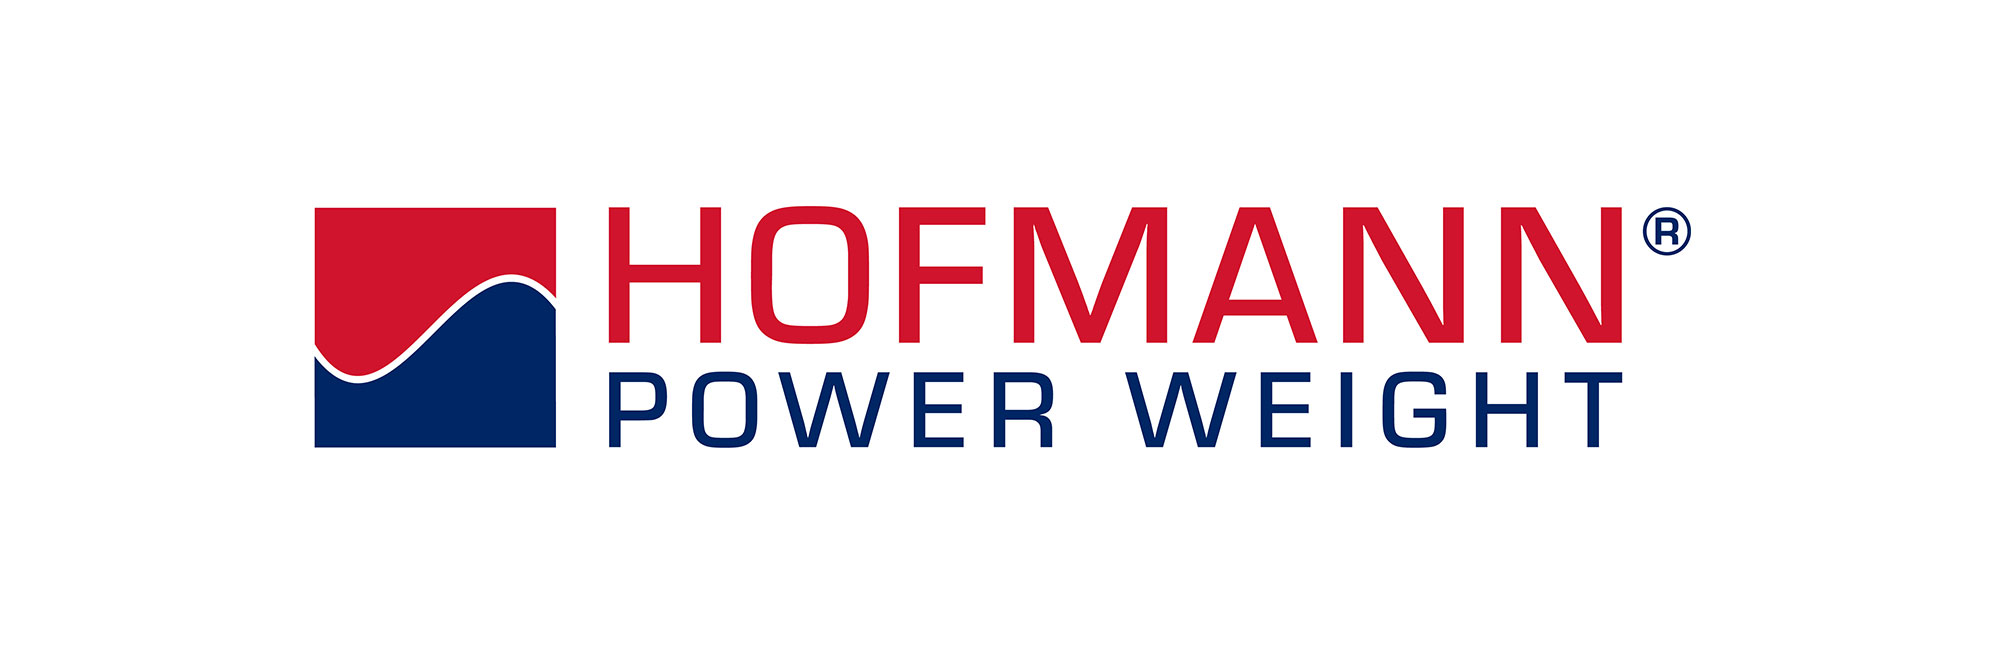 HOFMANN Power Weight Logo